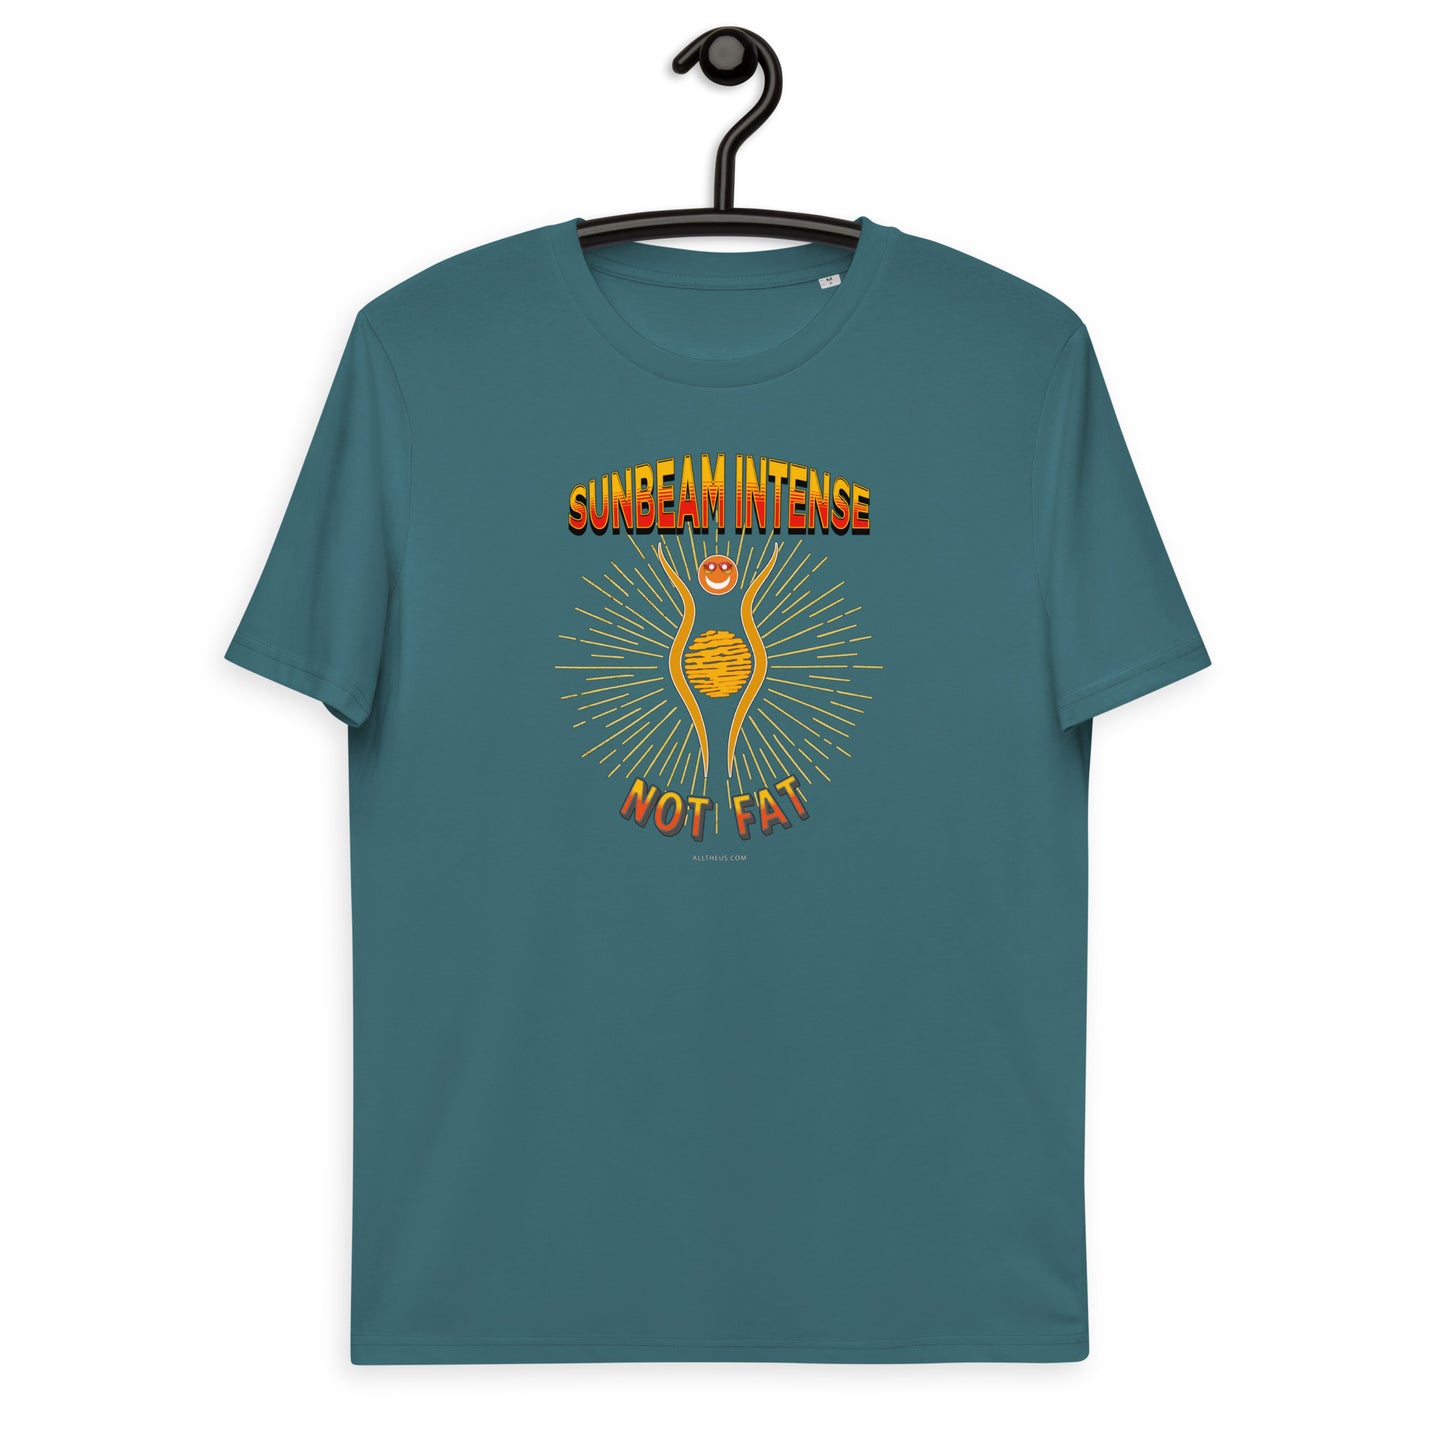 Unisex organic cotton t-shirt - Sunbeam Intense, Not Fat!